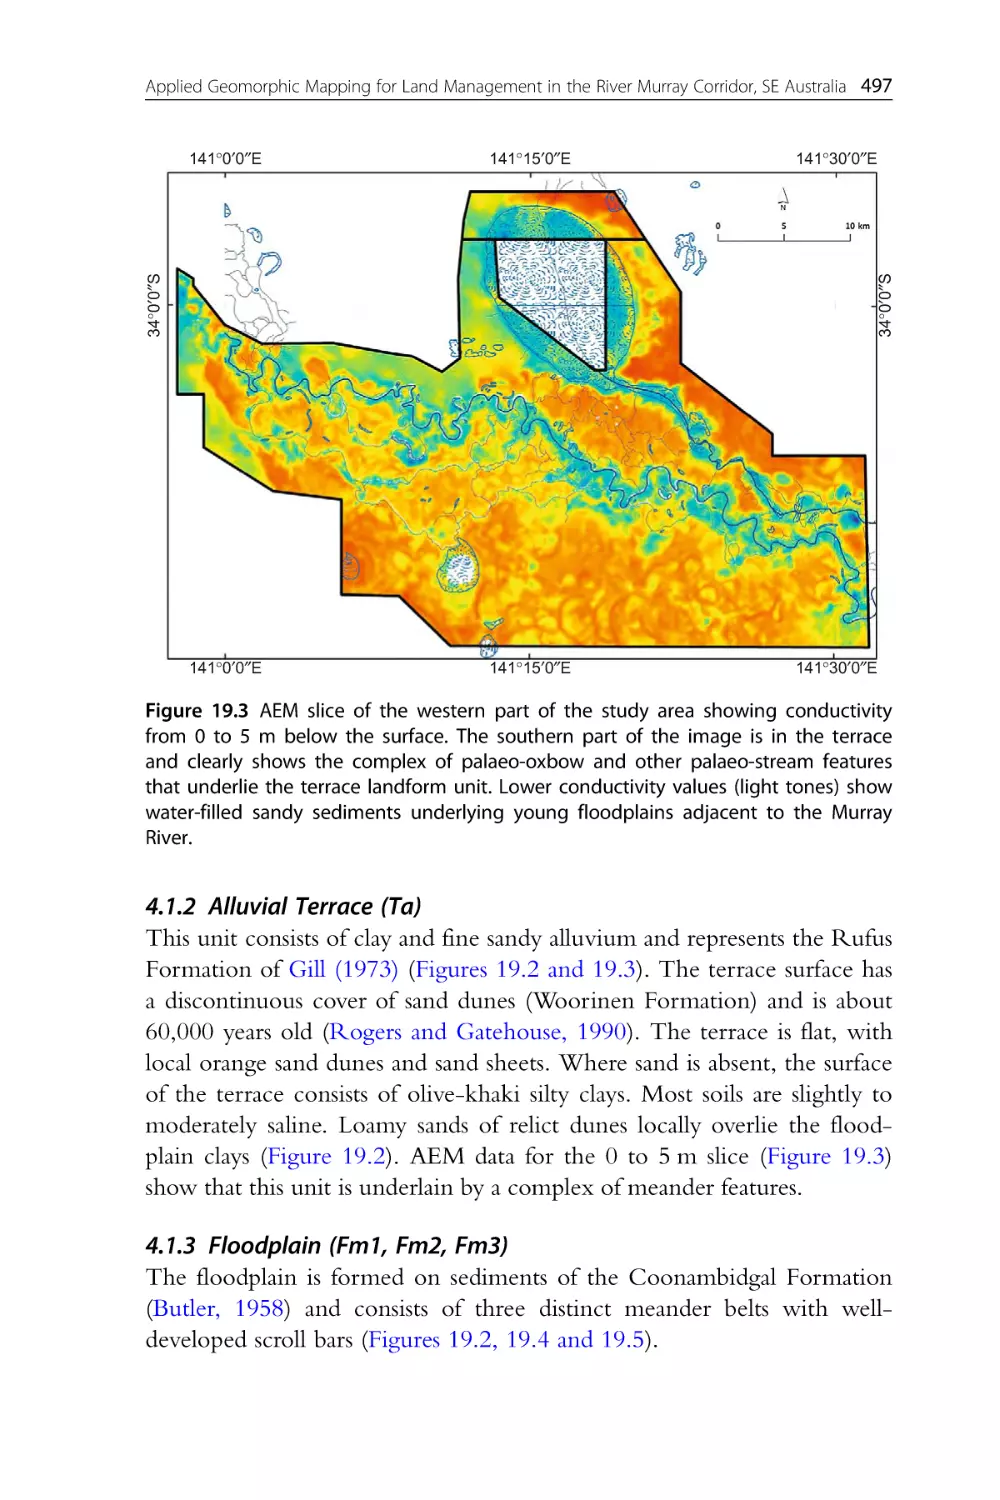 4.1.2 Alluvial Terrace (Ta)
4.1.3 Floodplain (Fm1, Fm2, Fm3)